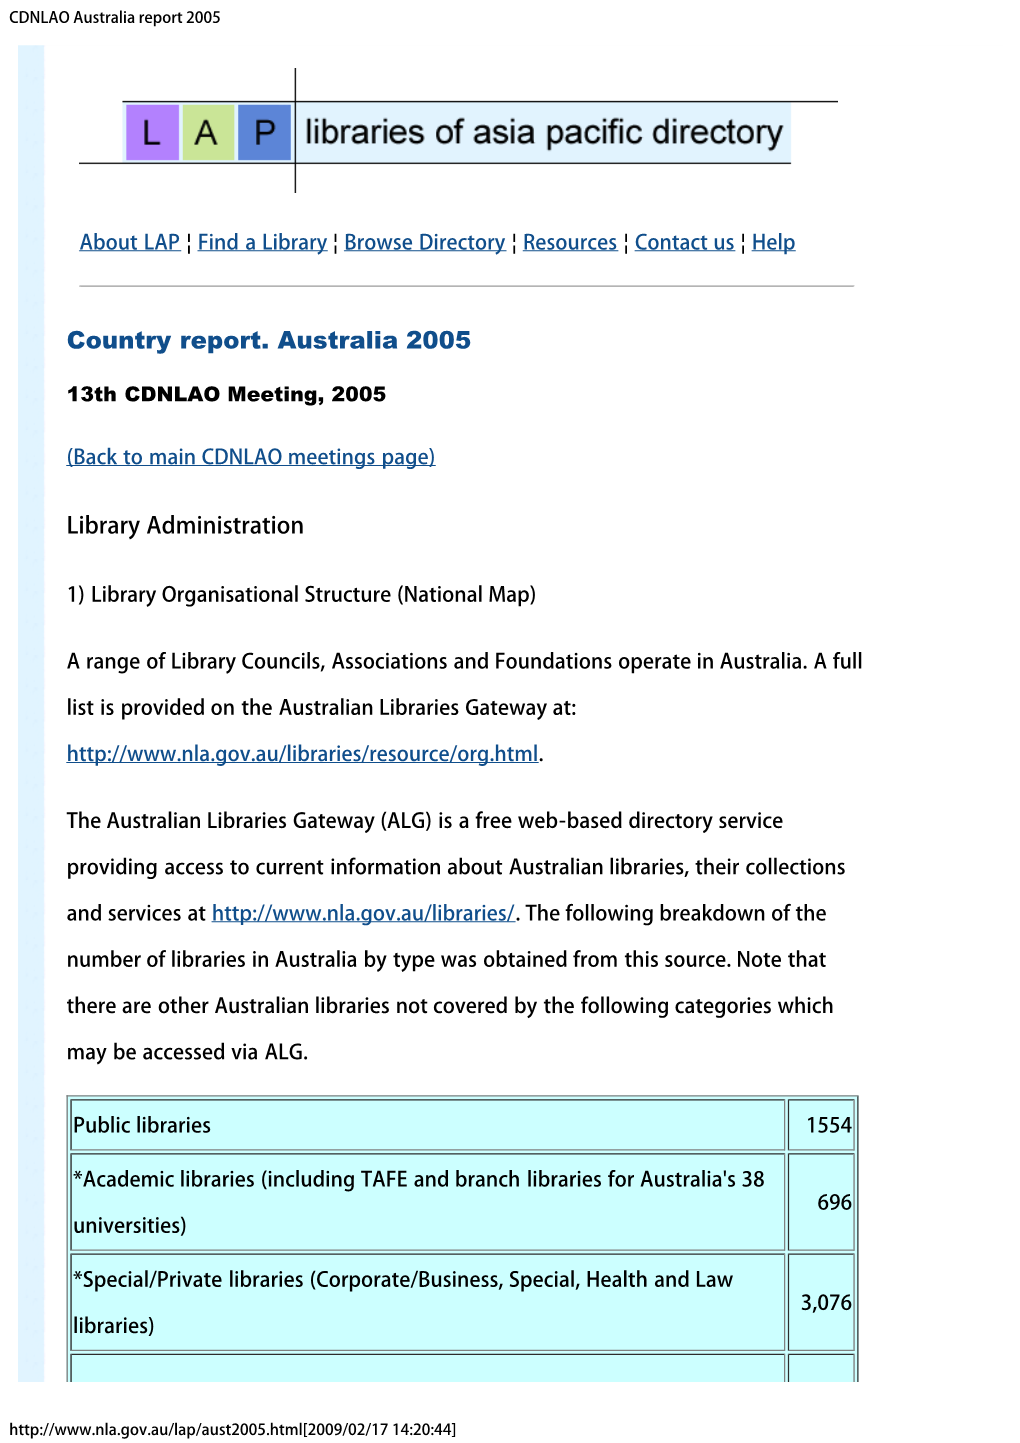 CDNLAO Australia Report 2005